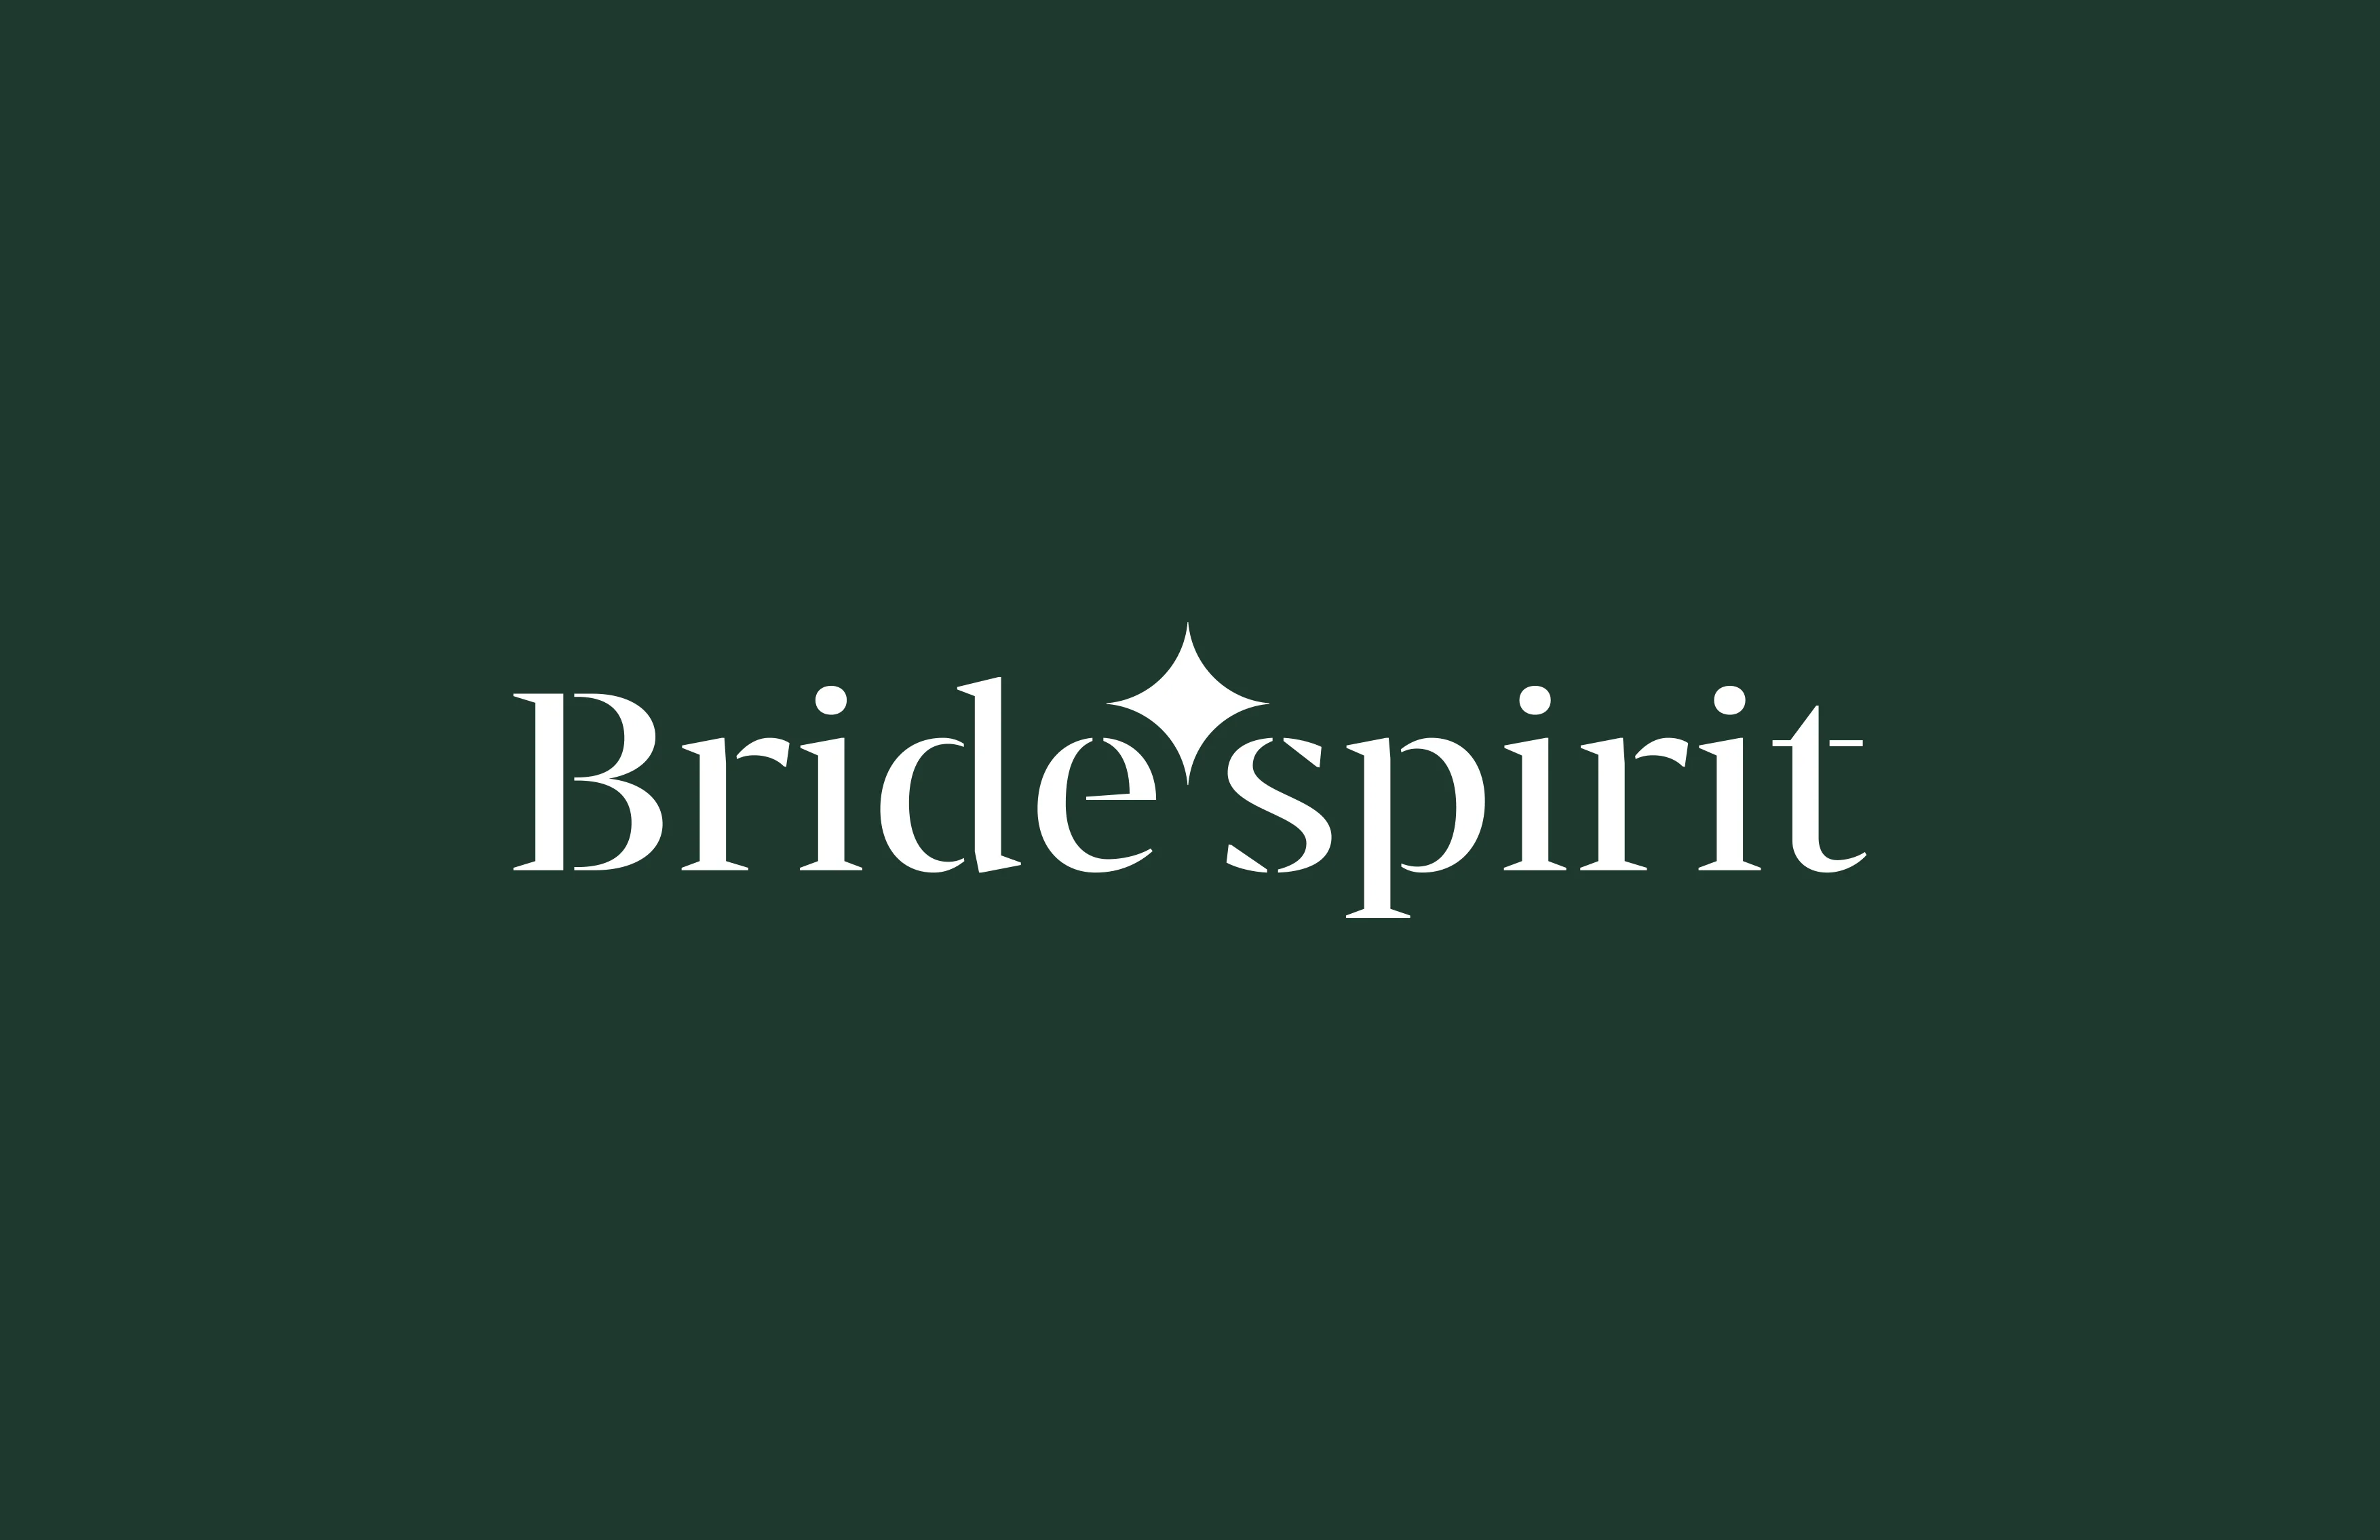 Bride'spirit Markalama Tasarımı